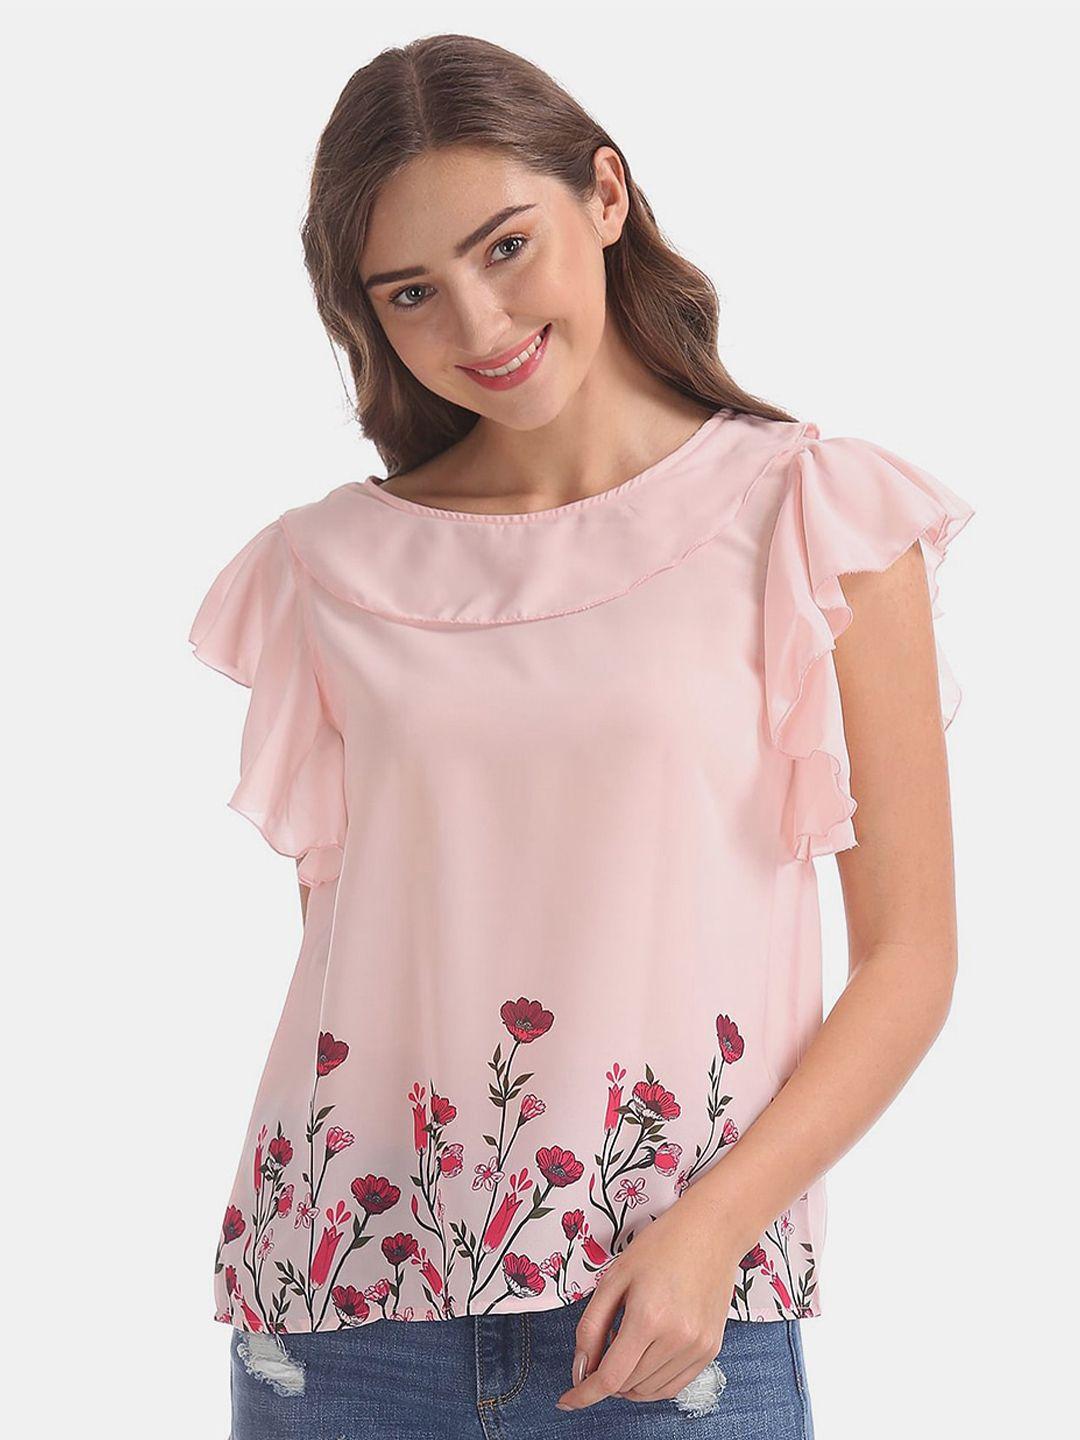 v-mart-floral-print-cotton-top